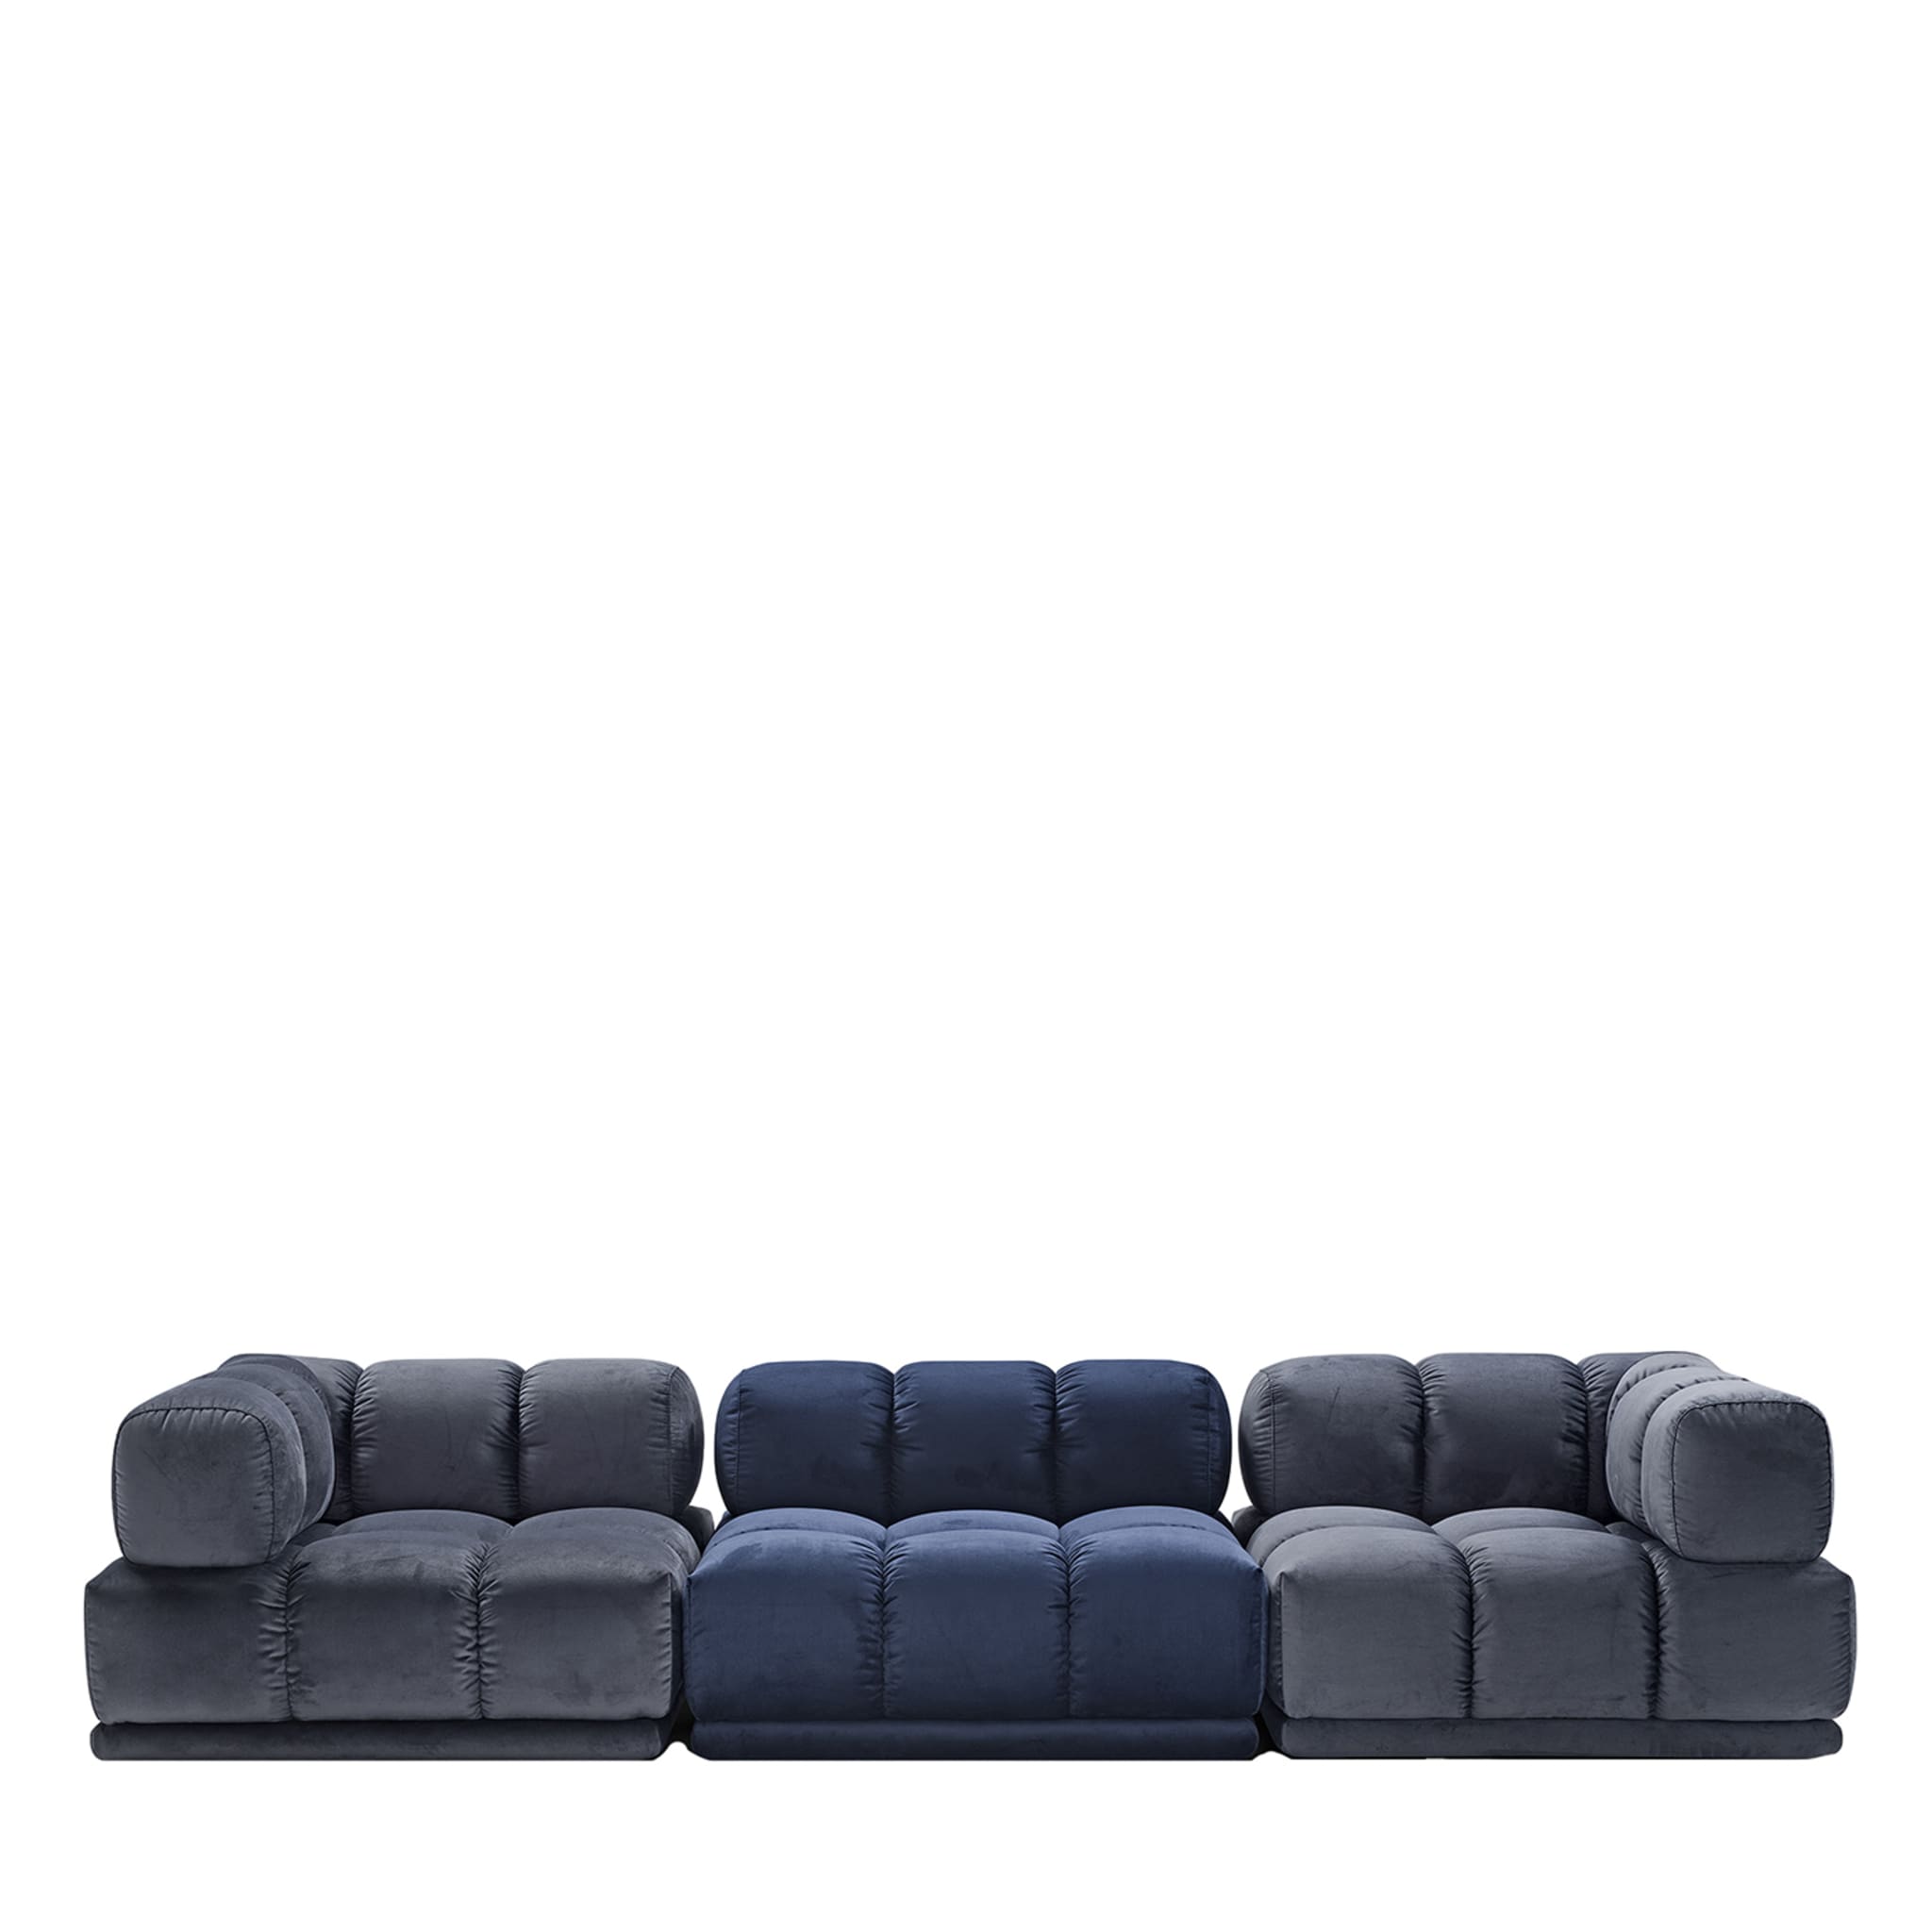 Sacai 3-Module Gray & Blue Sofa - Main view